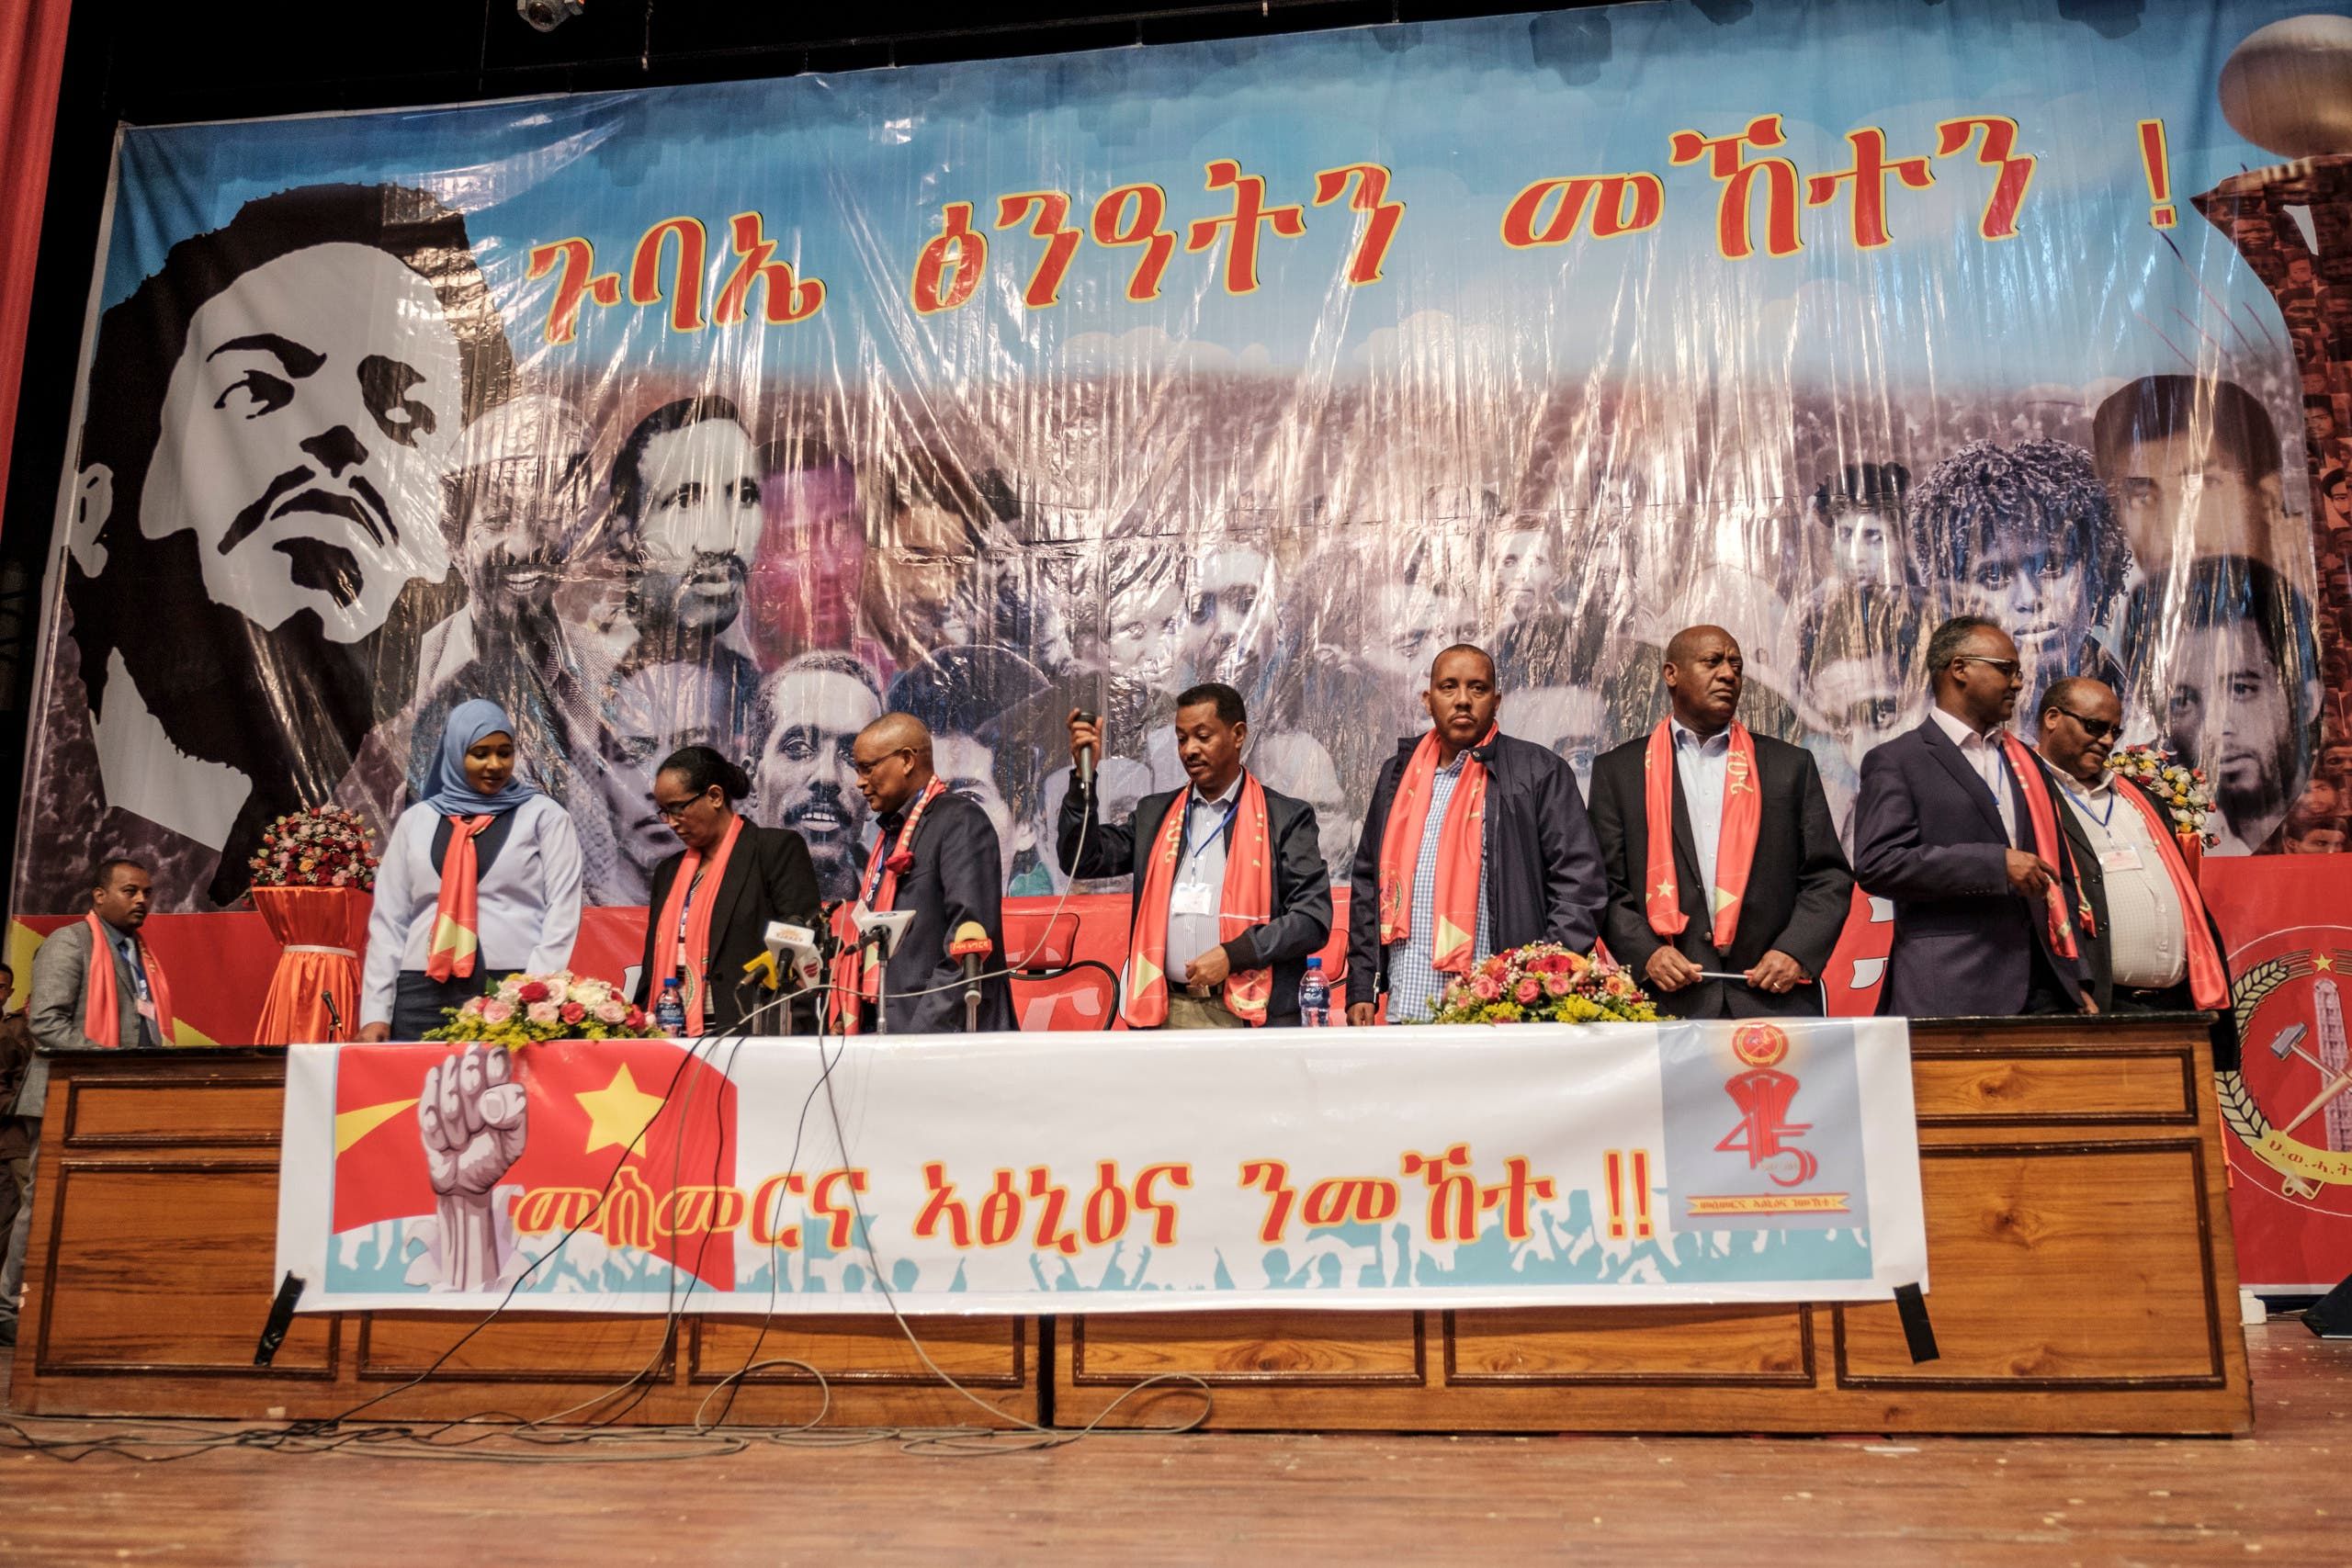 قياديون من الجبهة الشعبية لتحرير تيغراي خلال مؤتمر في يناير 2020 في الإقليم